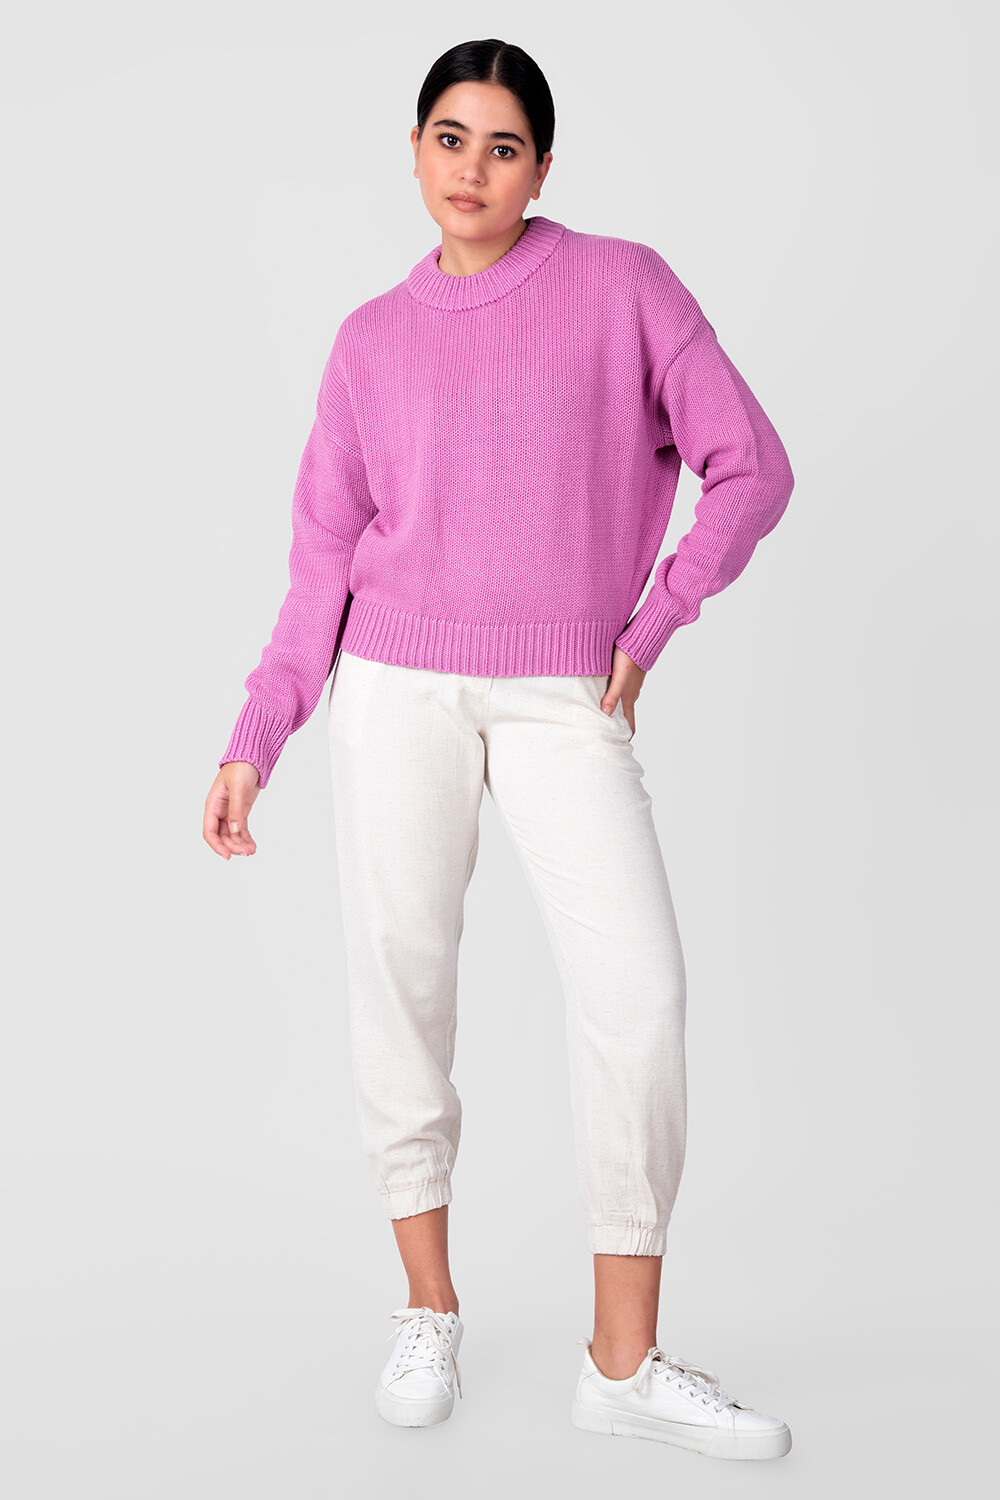 Sweater Solomun Violeta Claro